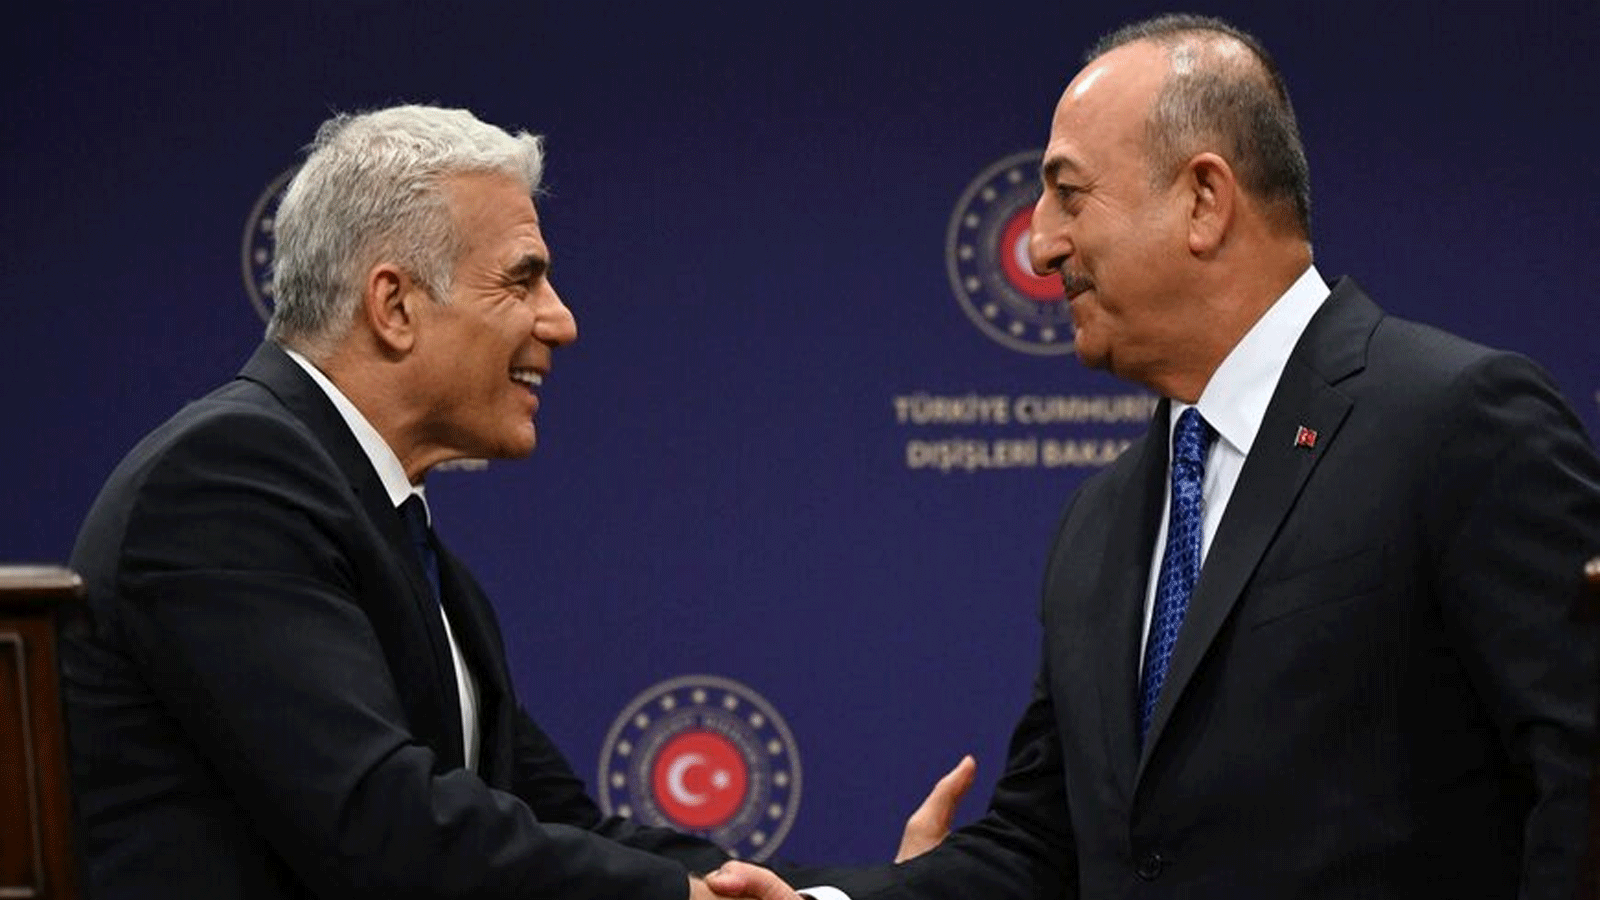 وزير الخارجية التركي مولود جاويش أوغلو (إلى اليمين) ووزير الخارجية الإسرائيلي يائير لابيد (إلى اليسار) يتصافحان خلال مؤتمر صحفي في 23 حزيران\يونيو 2022 في أنقرة.